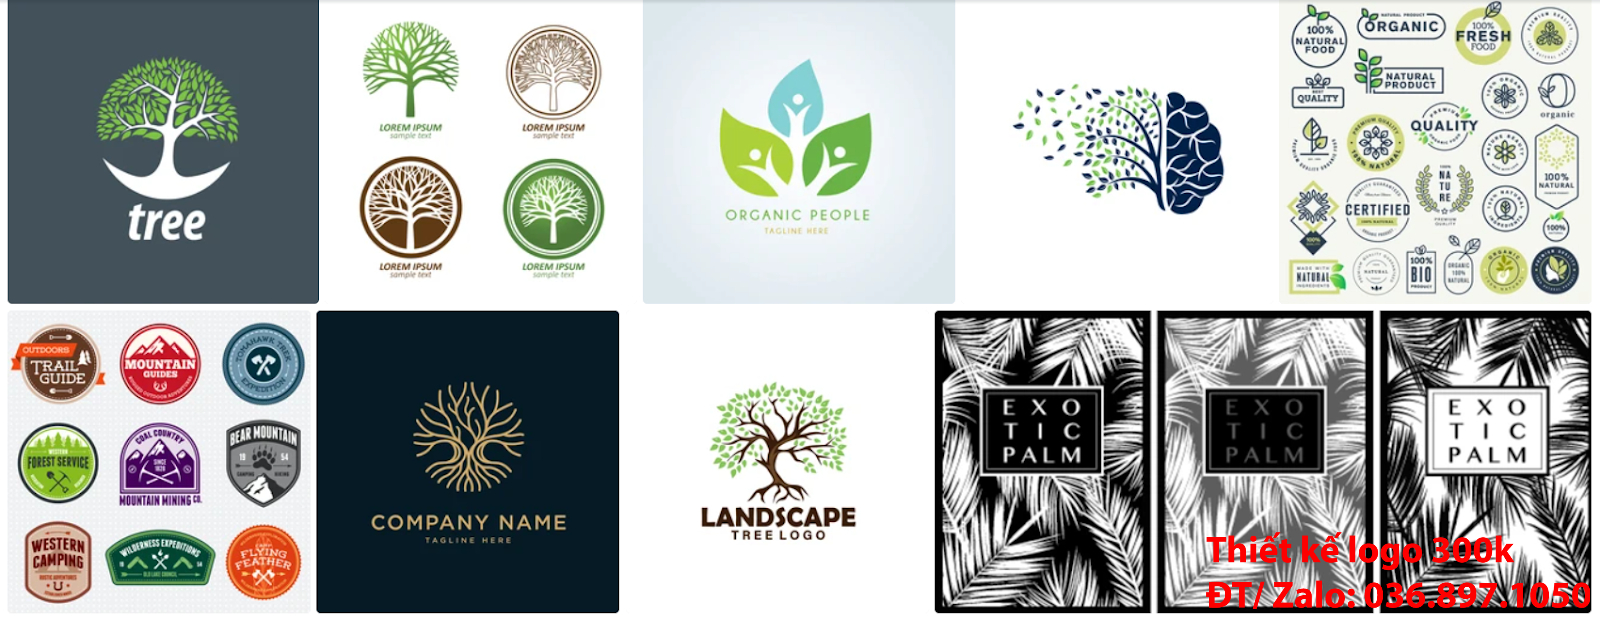 Công ty cung cấp dịch vụ mẫu logo cây xanh chuyên nghiệp giá rẻ 300k -500k tại Hà Nội